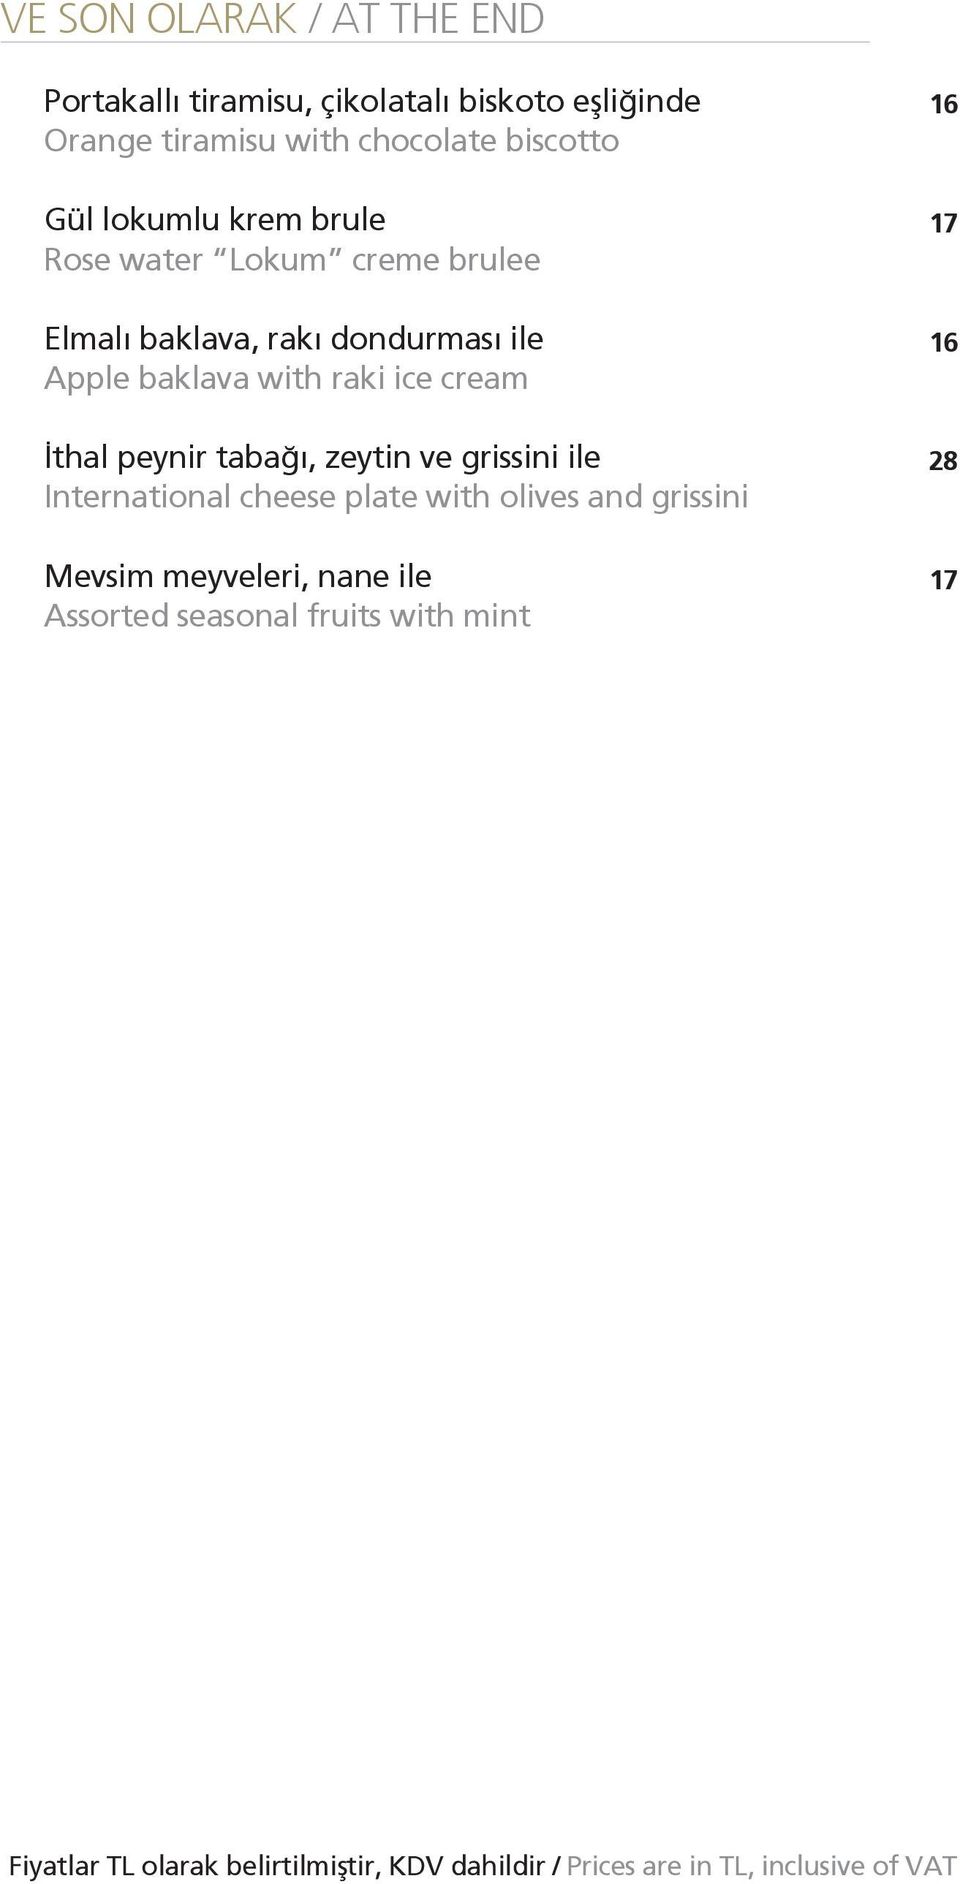 dondurması ile Apple baklava with raki ice cream İthal peynir tabağı, zeytin ve grissini ile